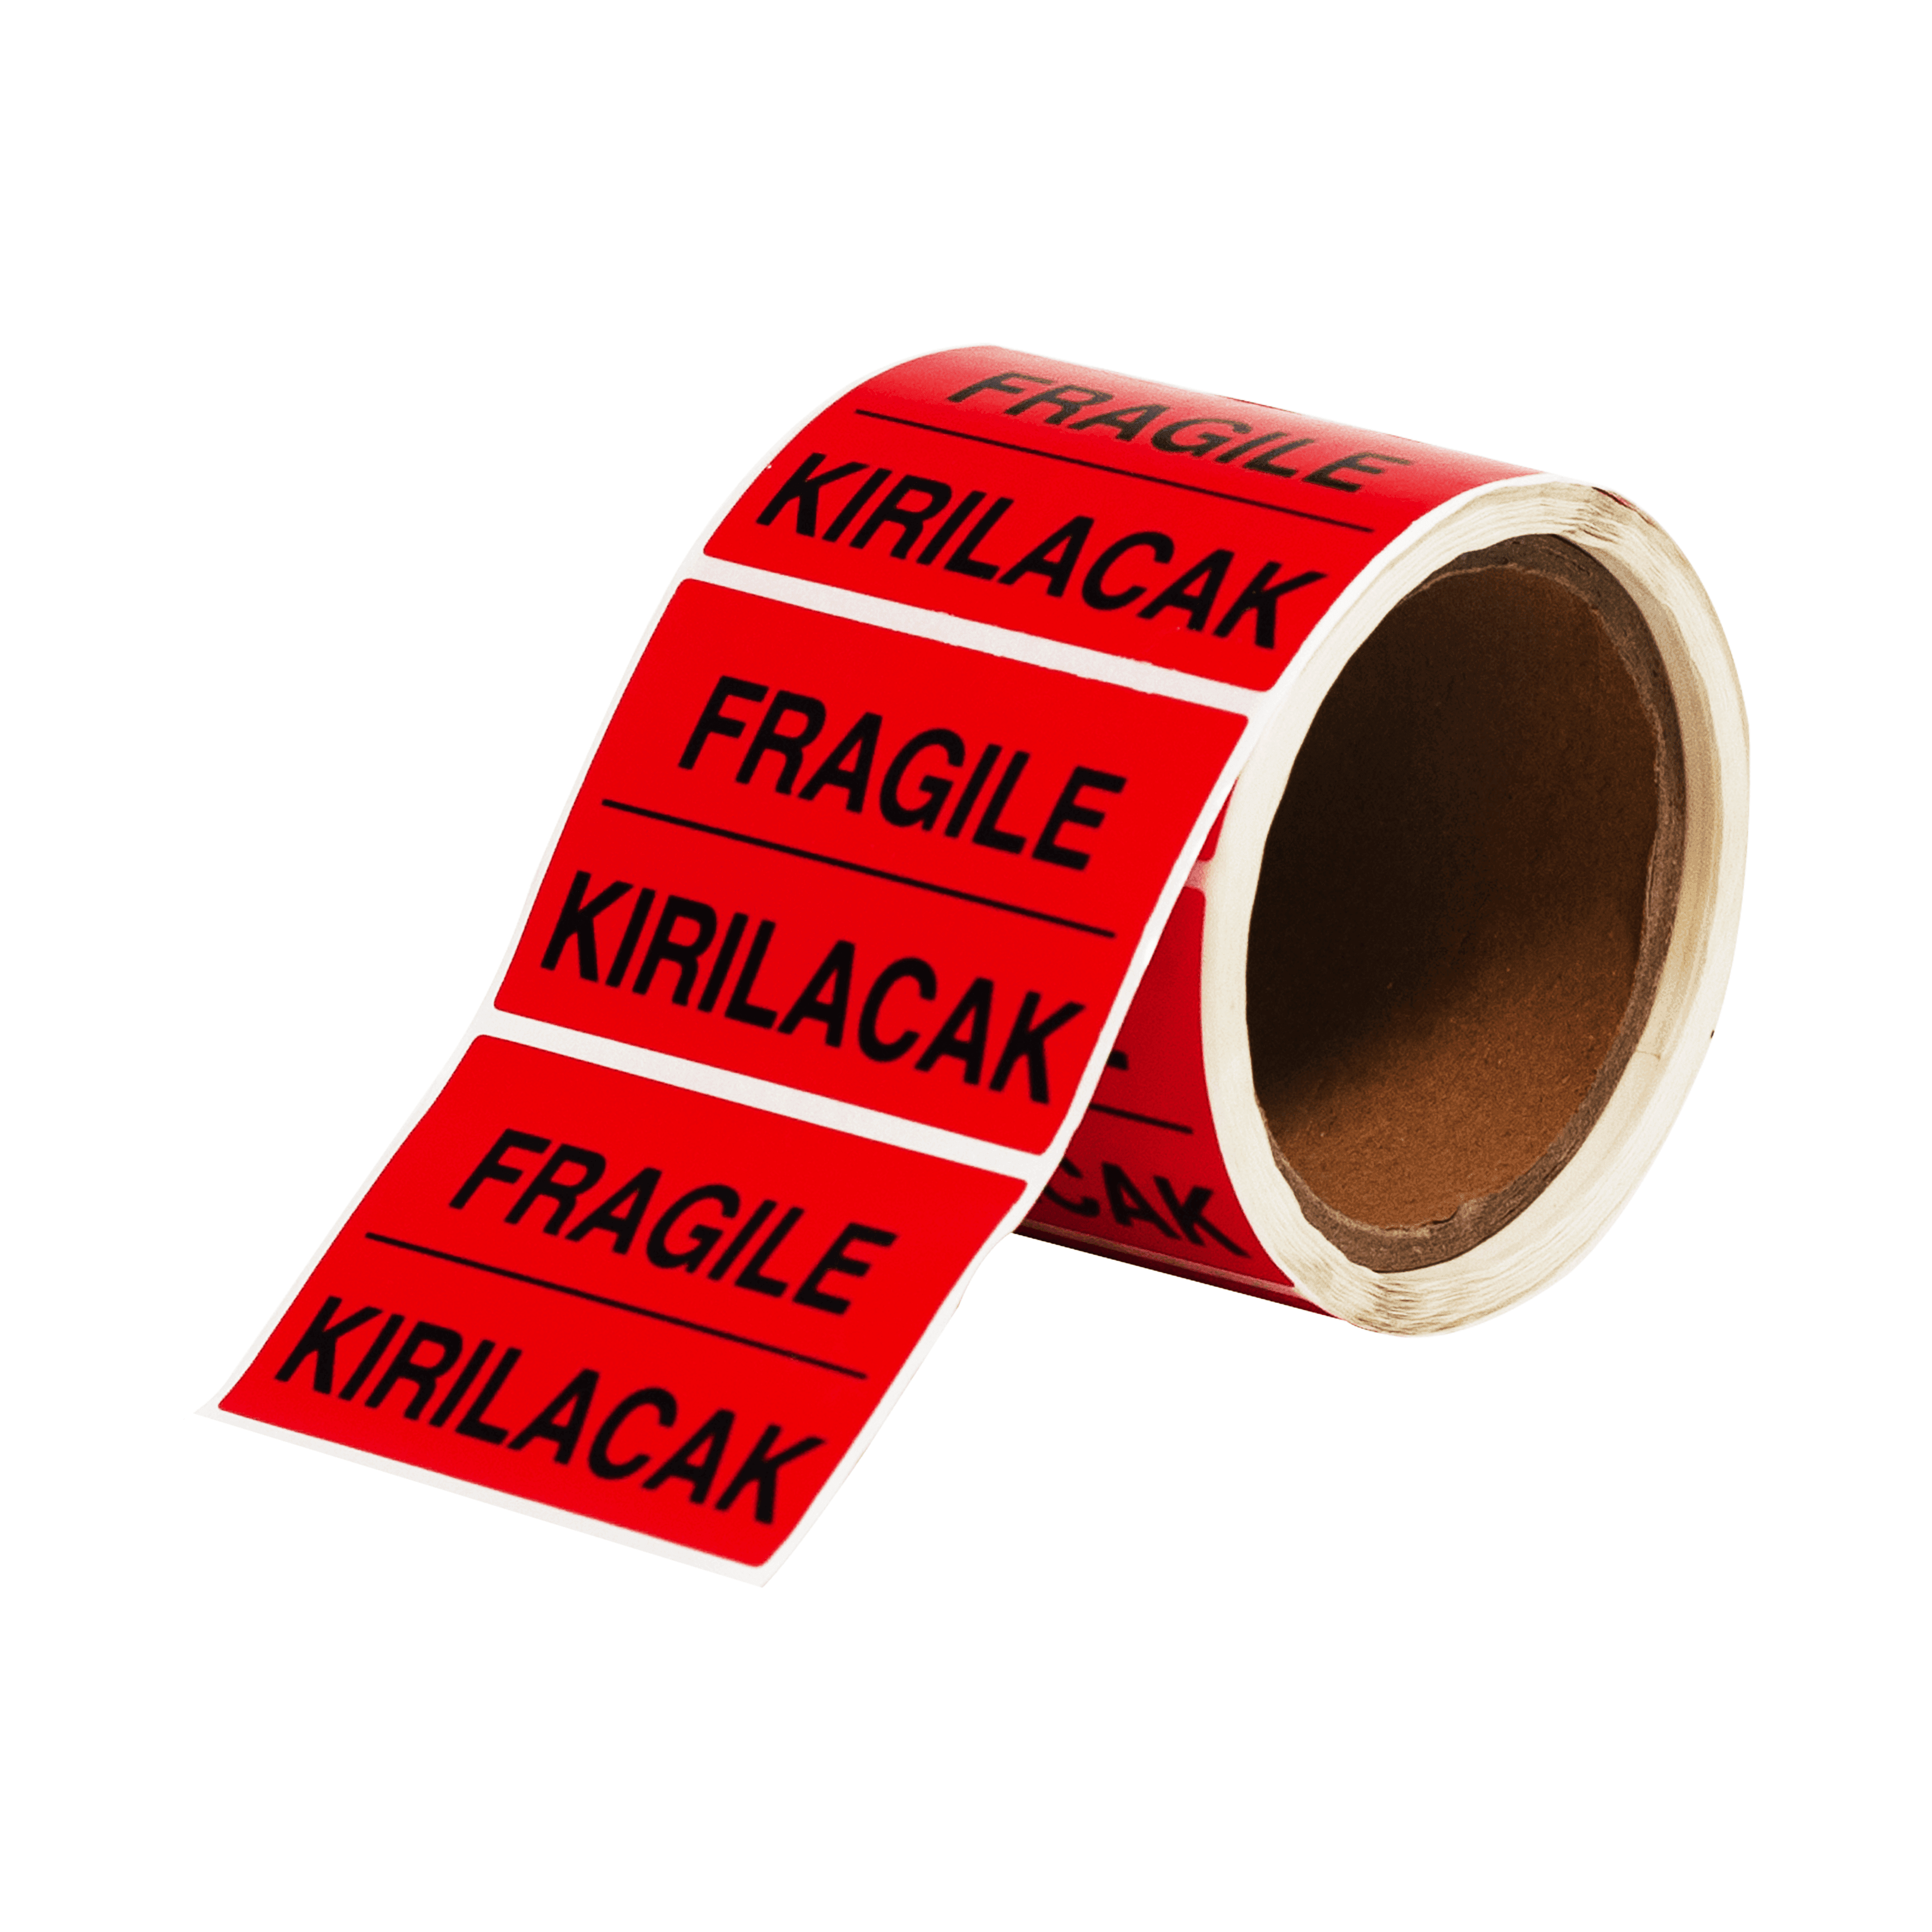 Baskılı Uyarı Etiketi Fragile (Kırılacak) PP Opak 85x55 mm 1 Rulo (250 Adet)